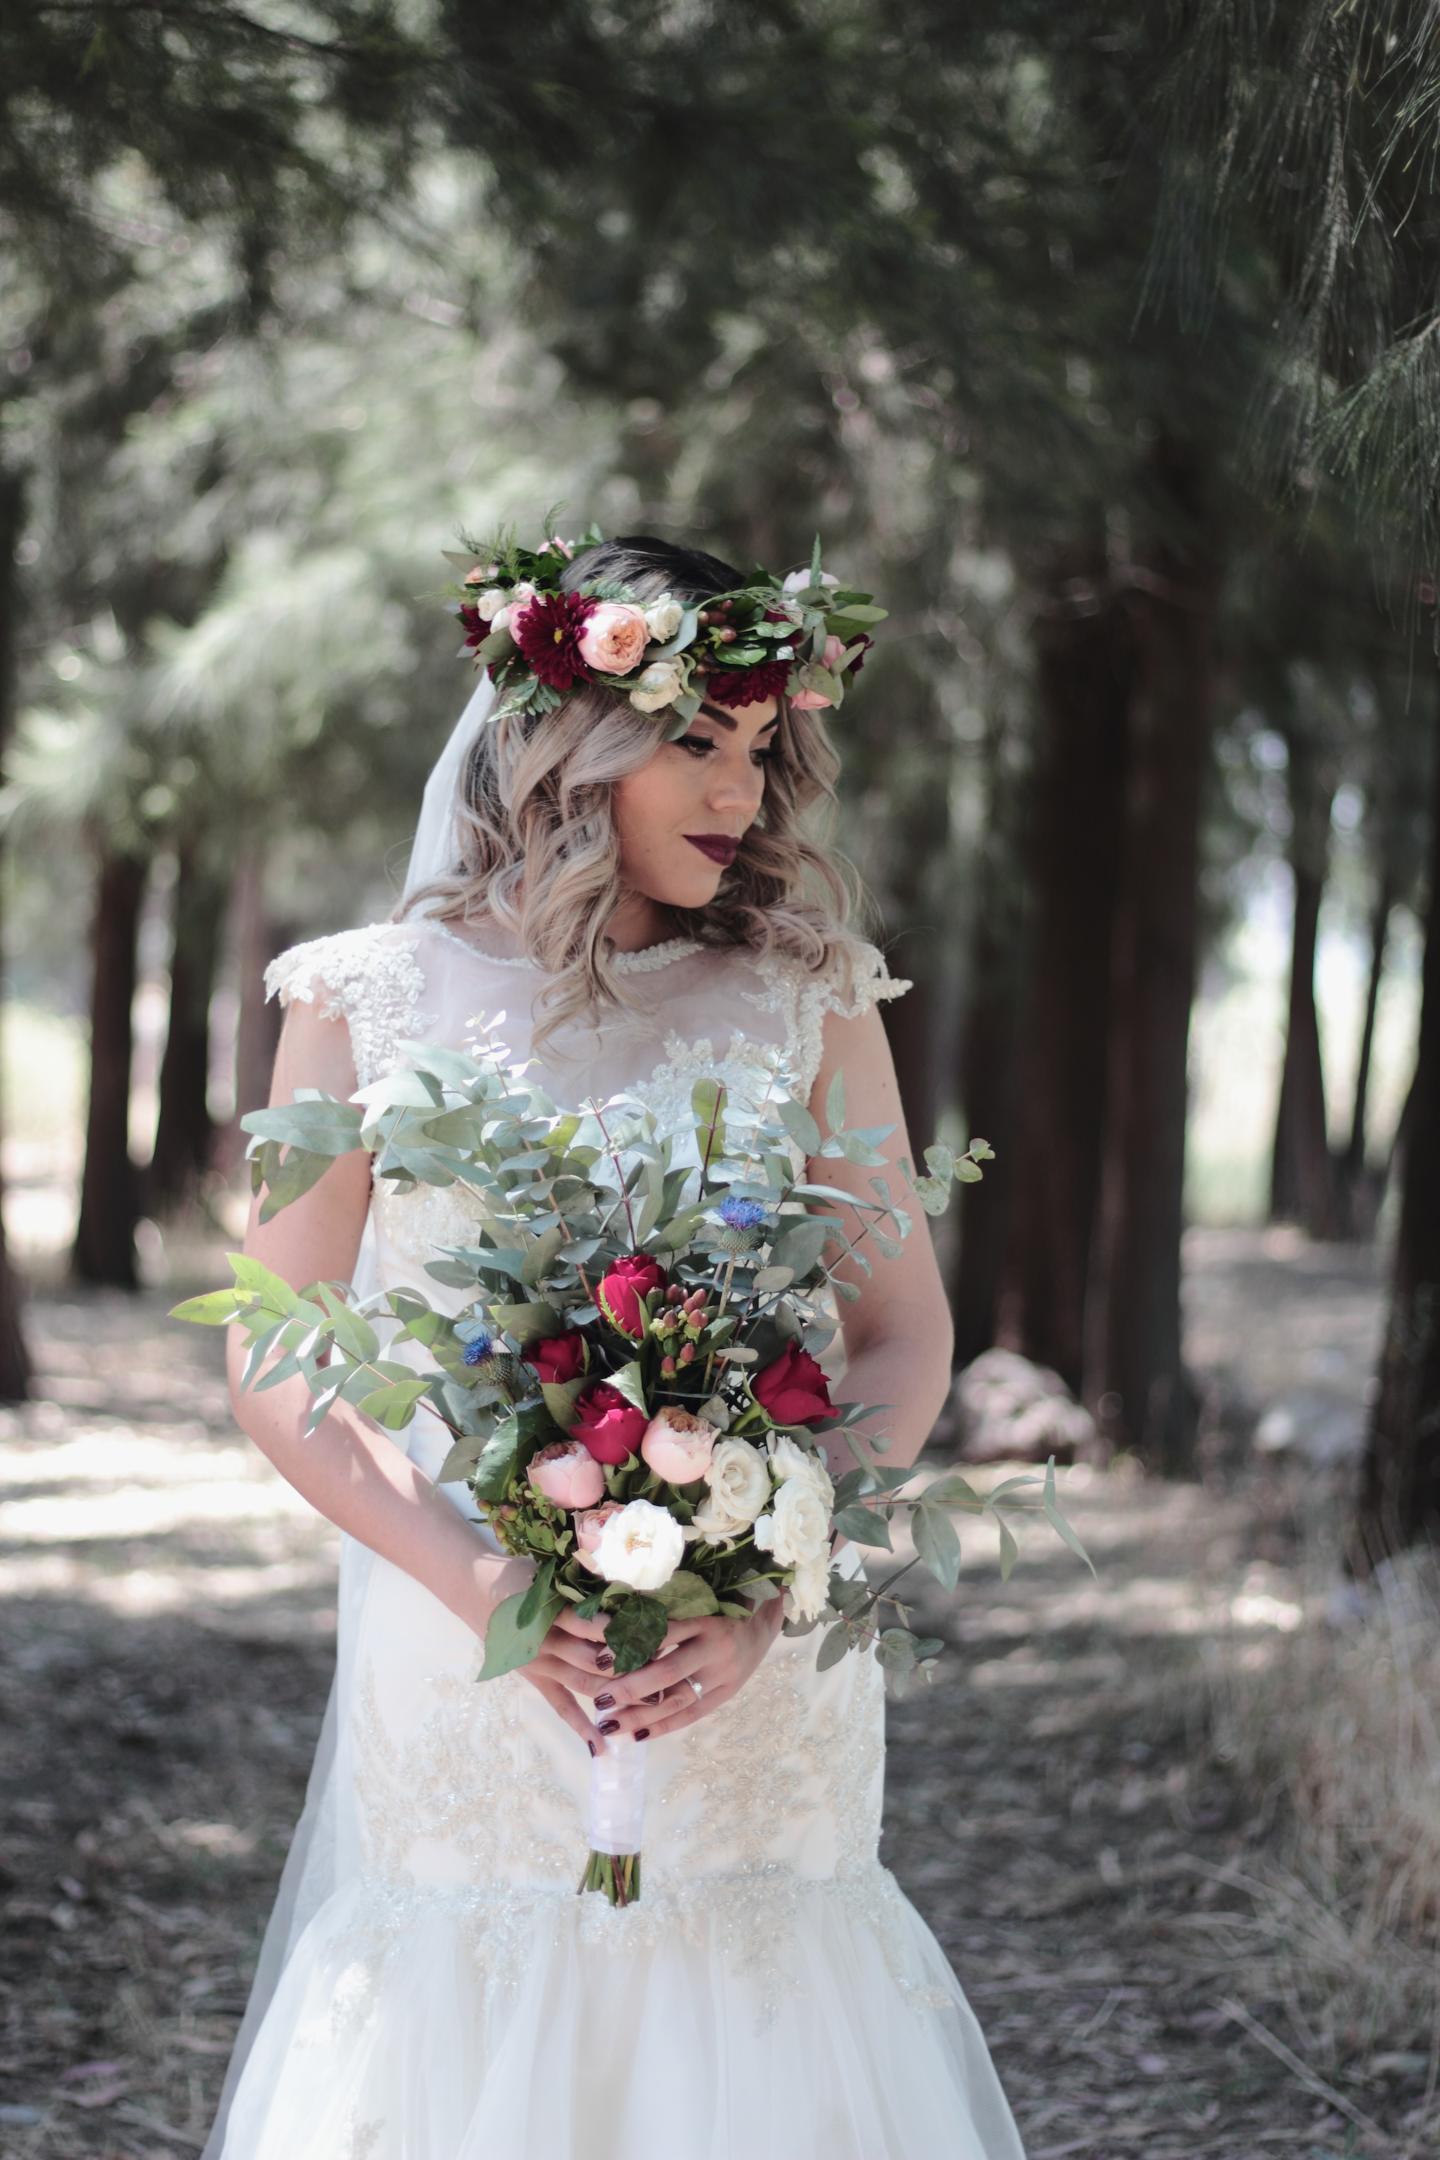 Bride wearing a flowers headpiece.